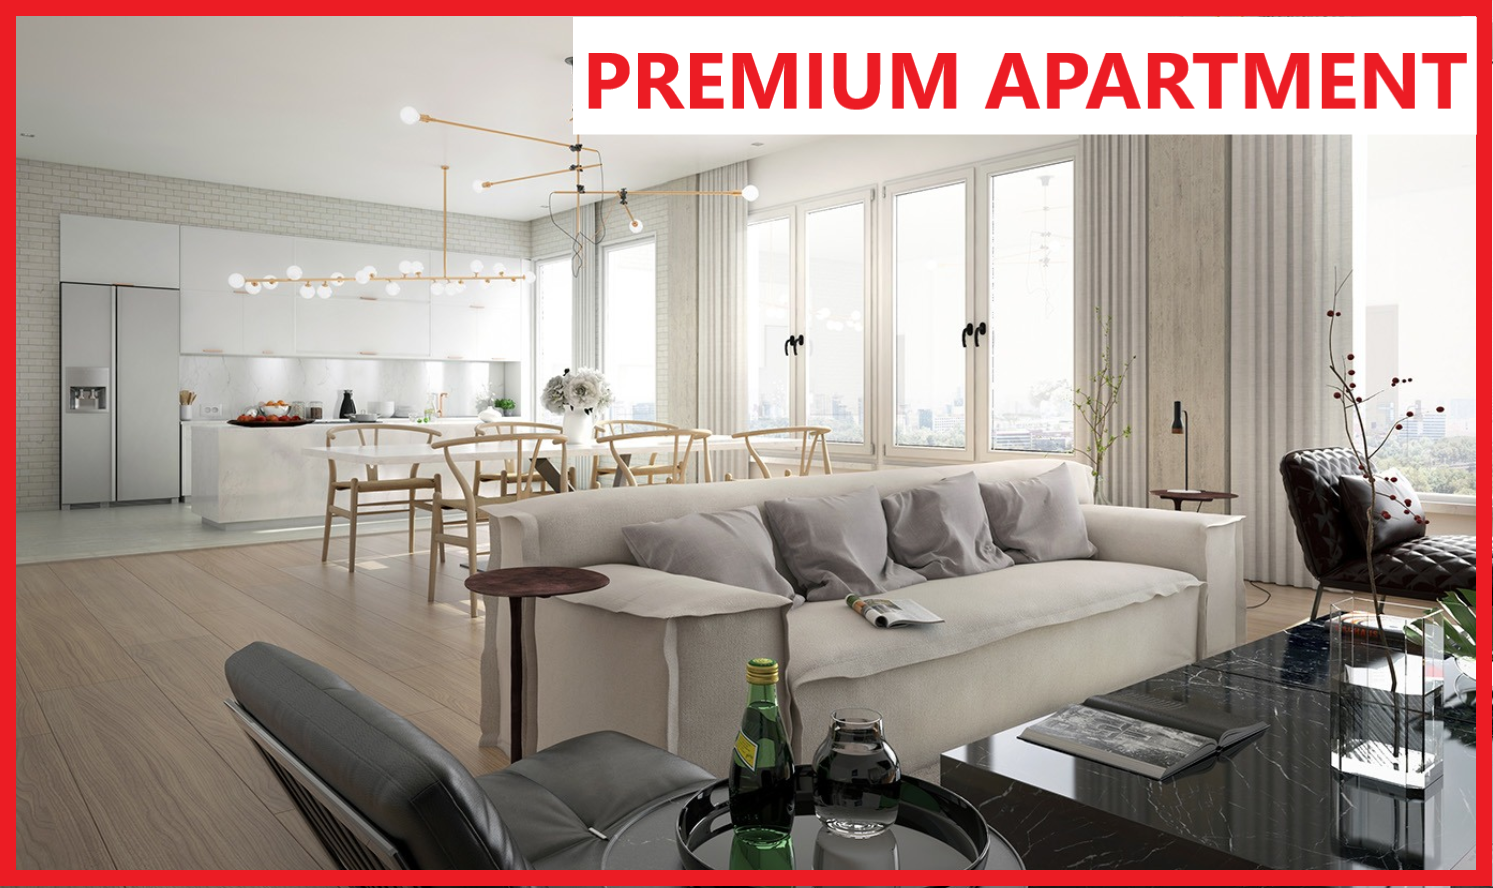 Premium Apartments in India, Top Luxury Apartments India